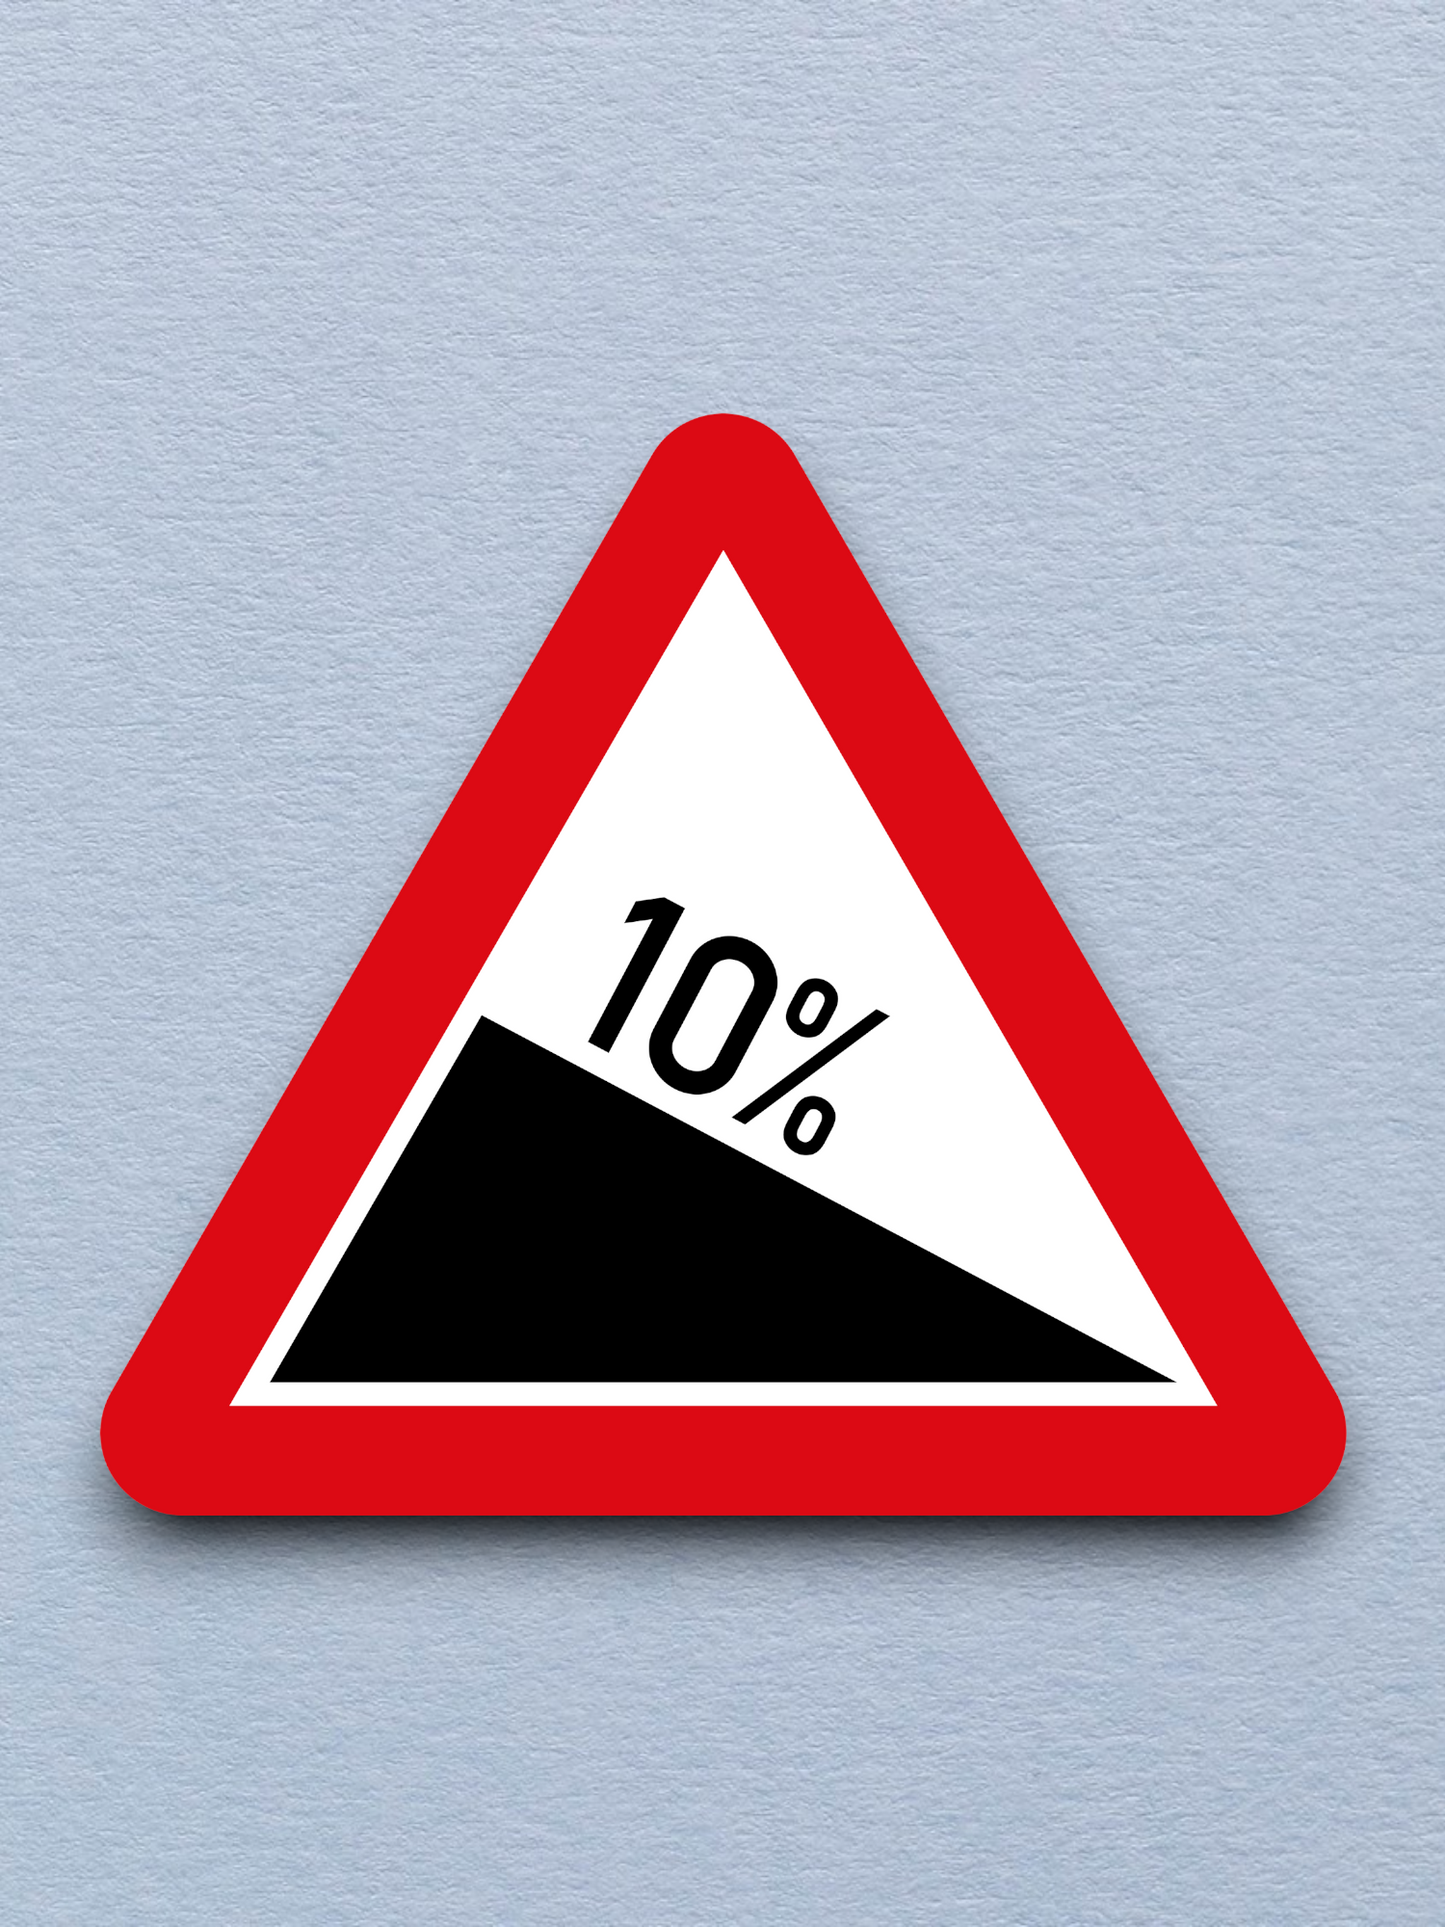 10 Percent Grade Road Sign Sticker